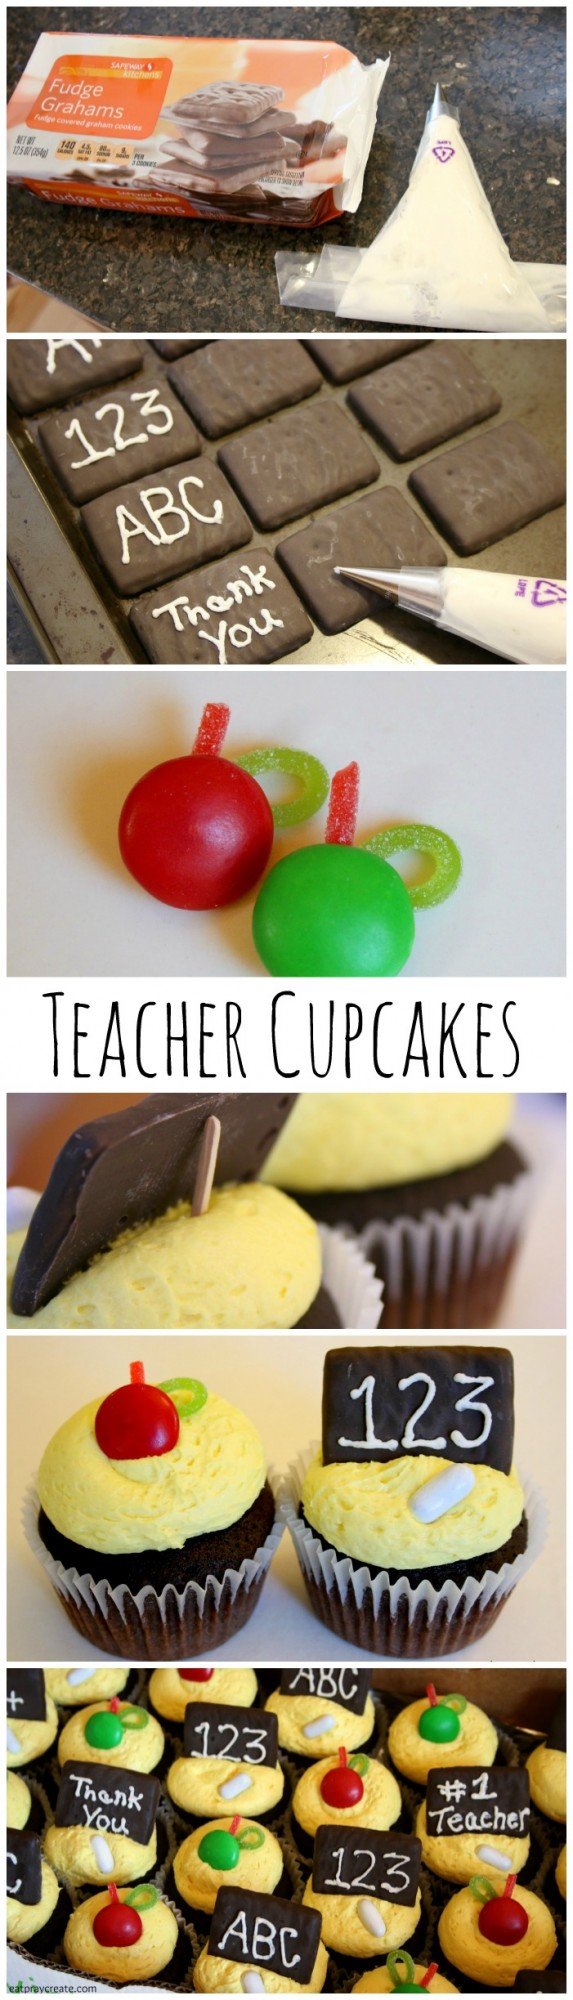 Teacher cupcakes pin